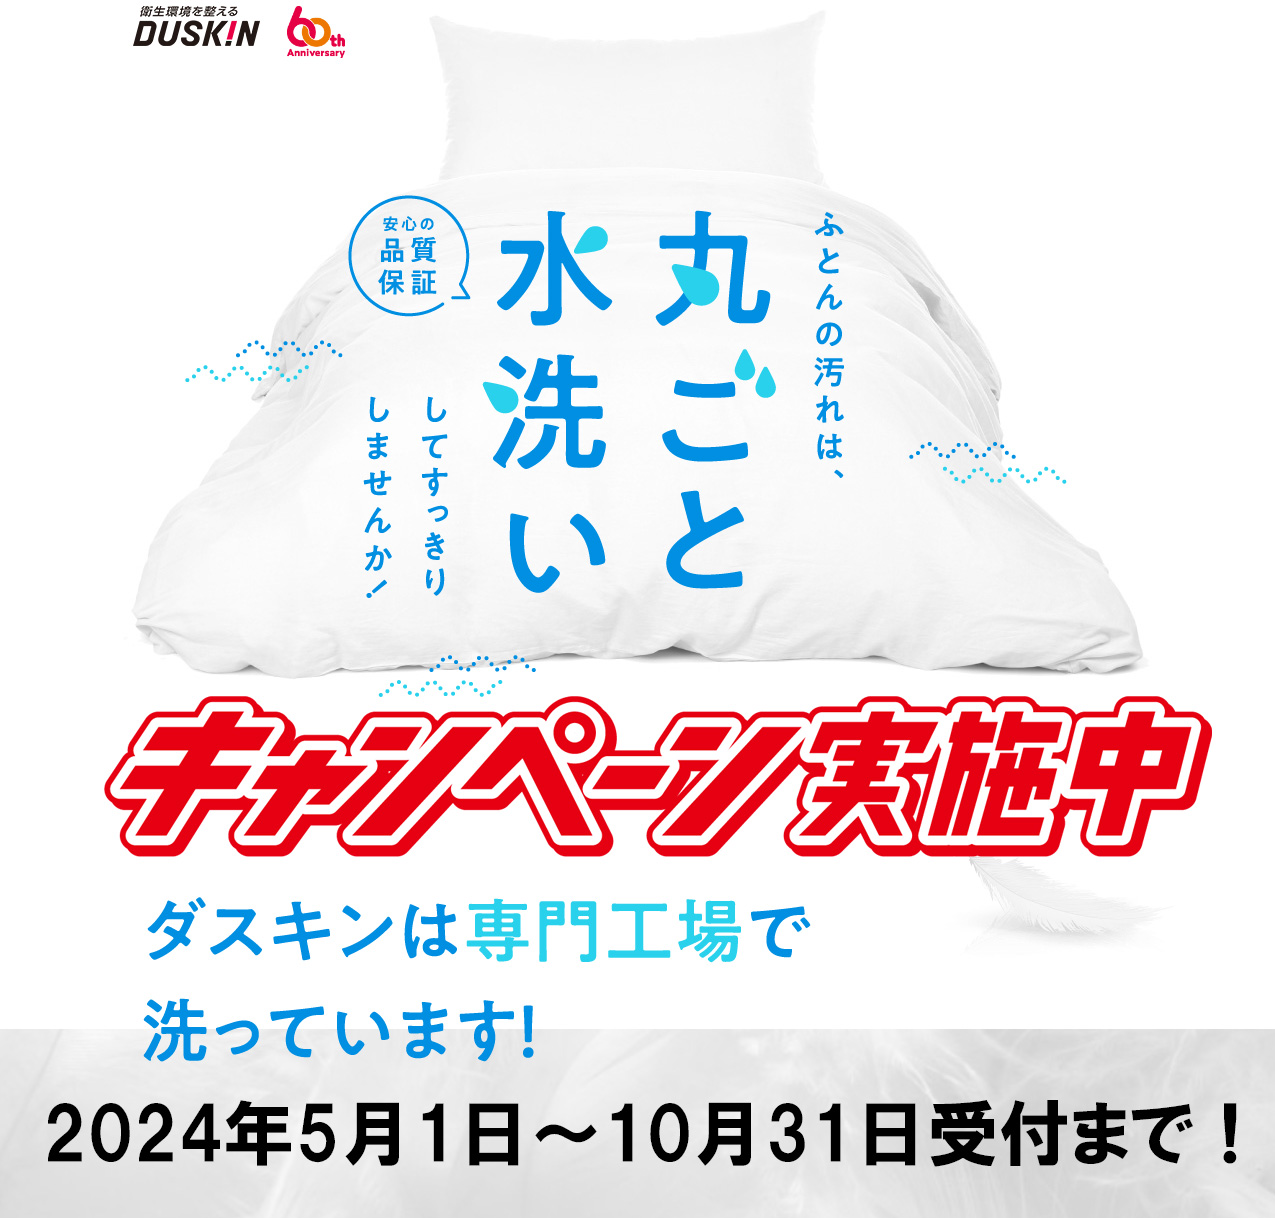 ダスキン布団丸洗いキャンペーン期間は2024年10月31日まで